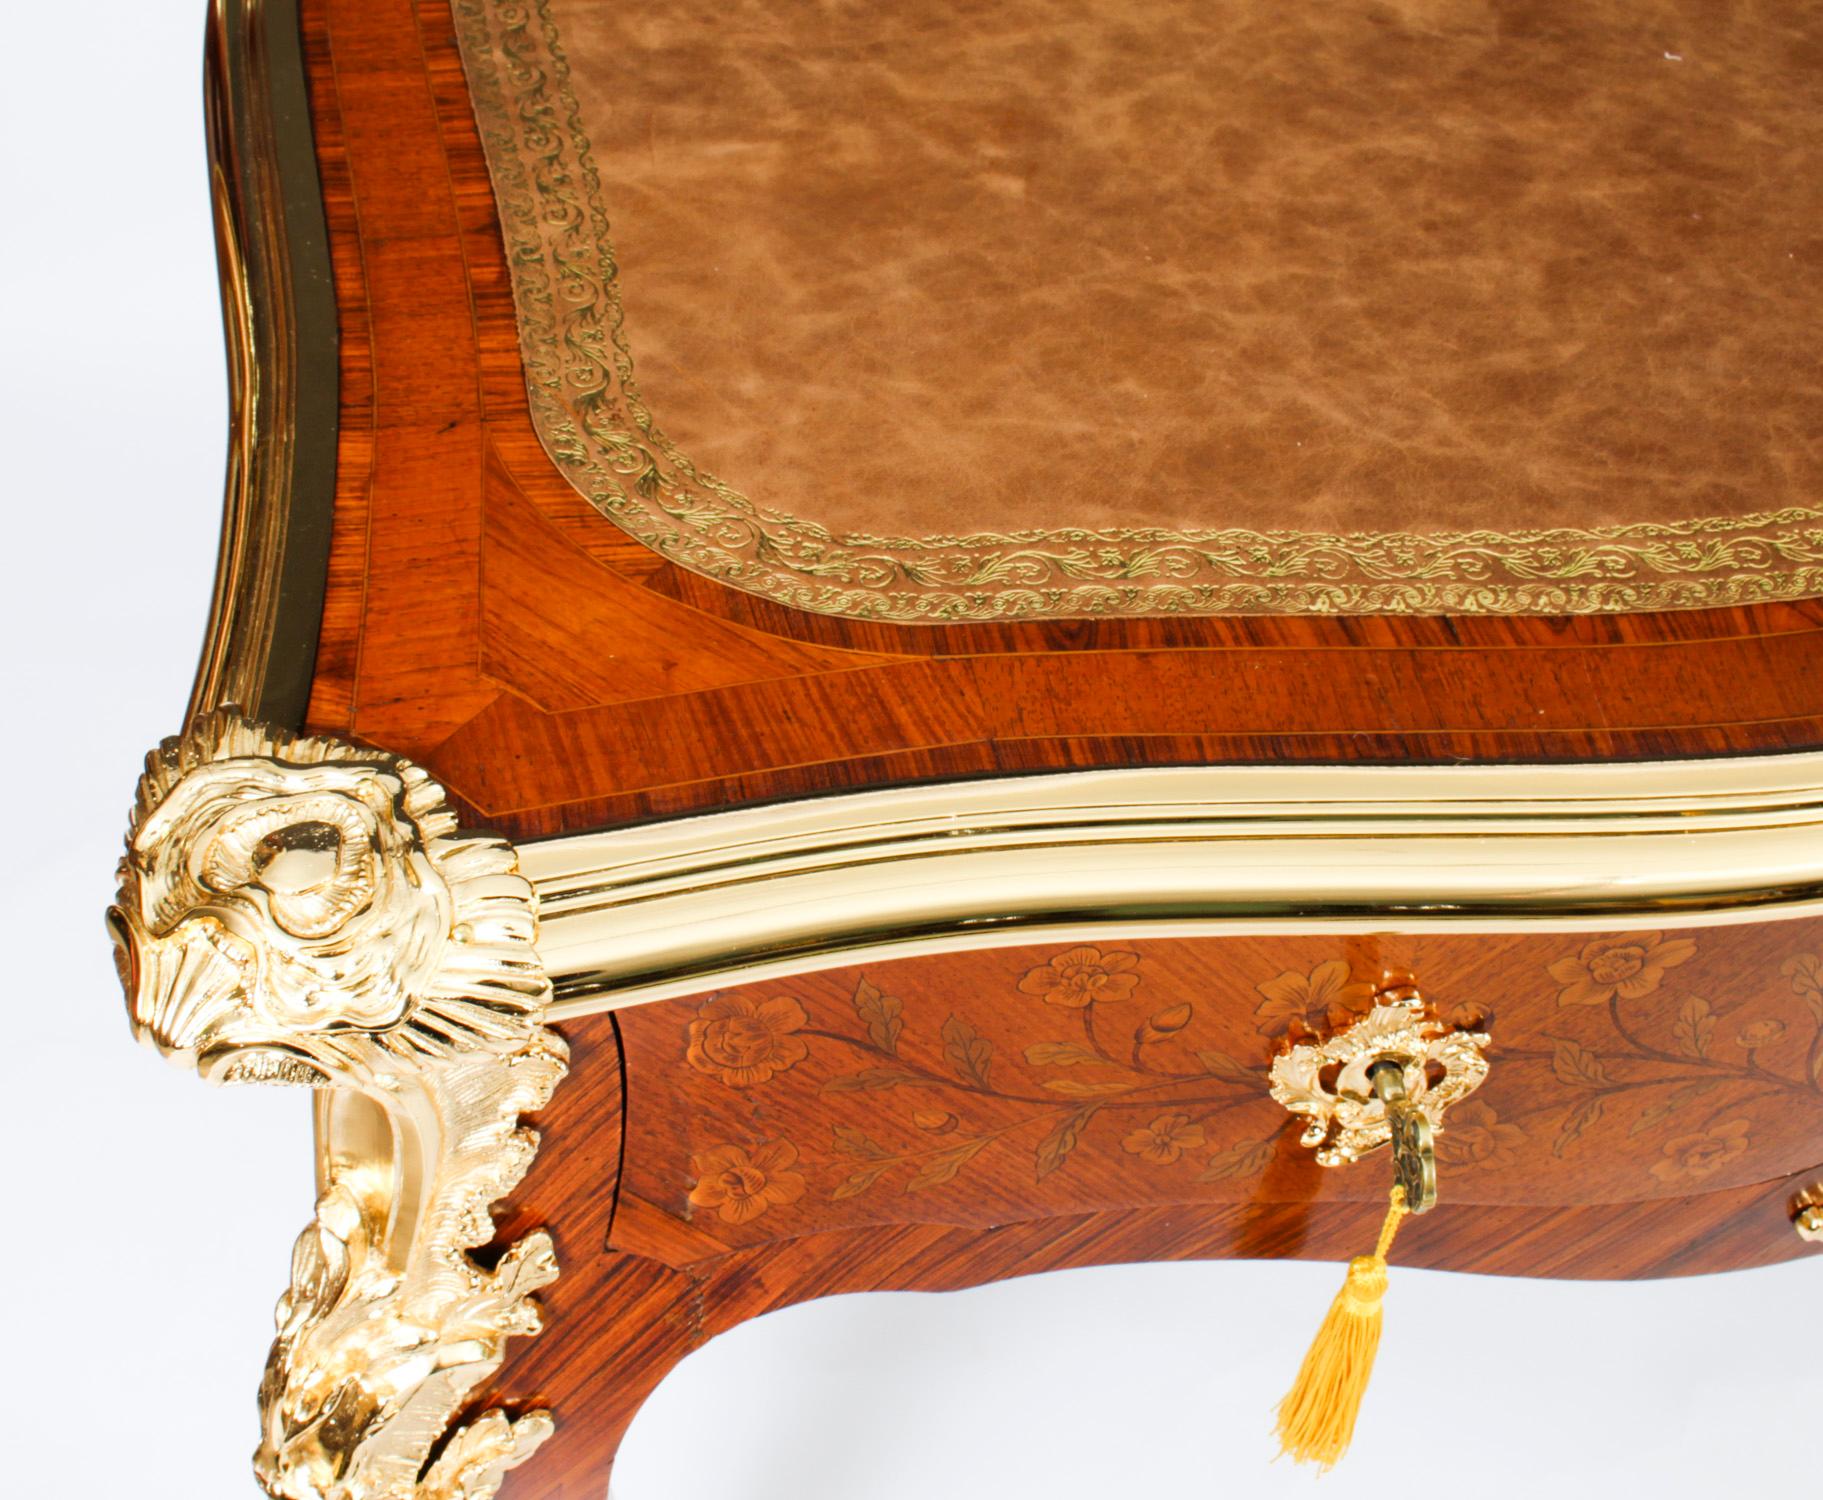 Leather Antique Ormolu Mounted Bureau Plat Desk Hopilliart Paris 18th Century